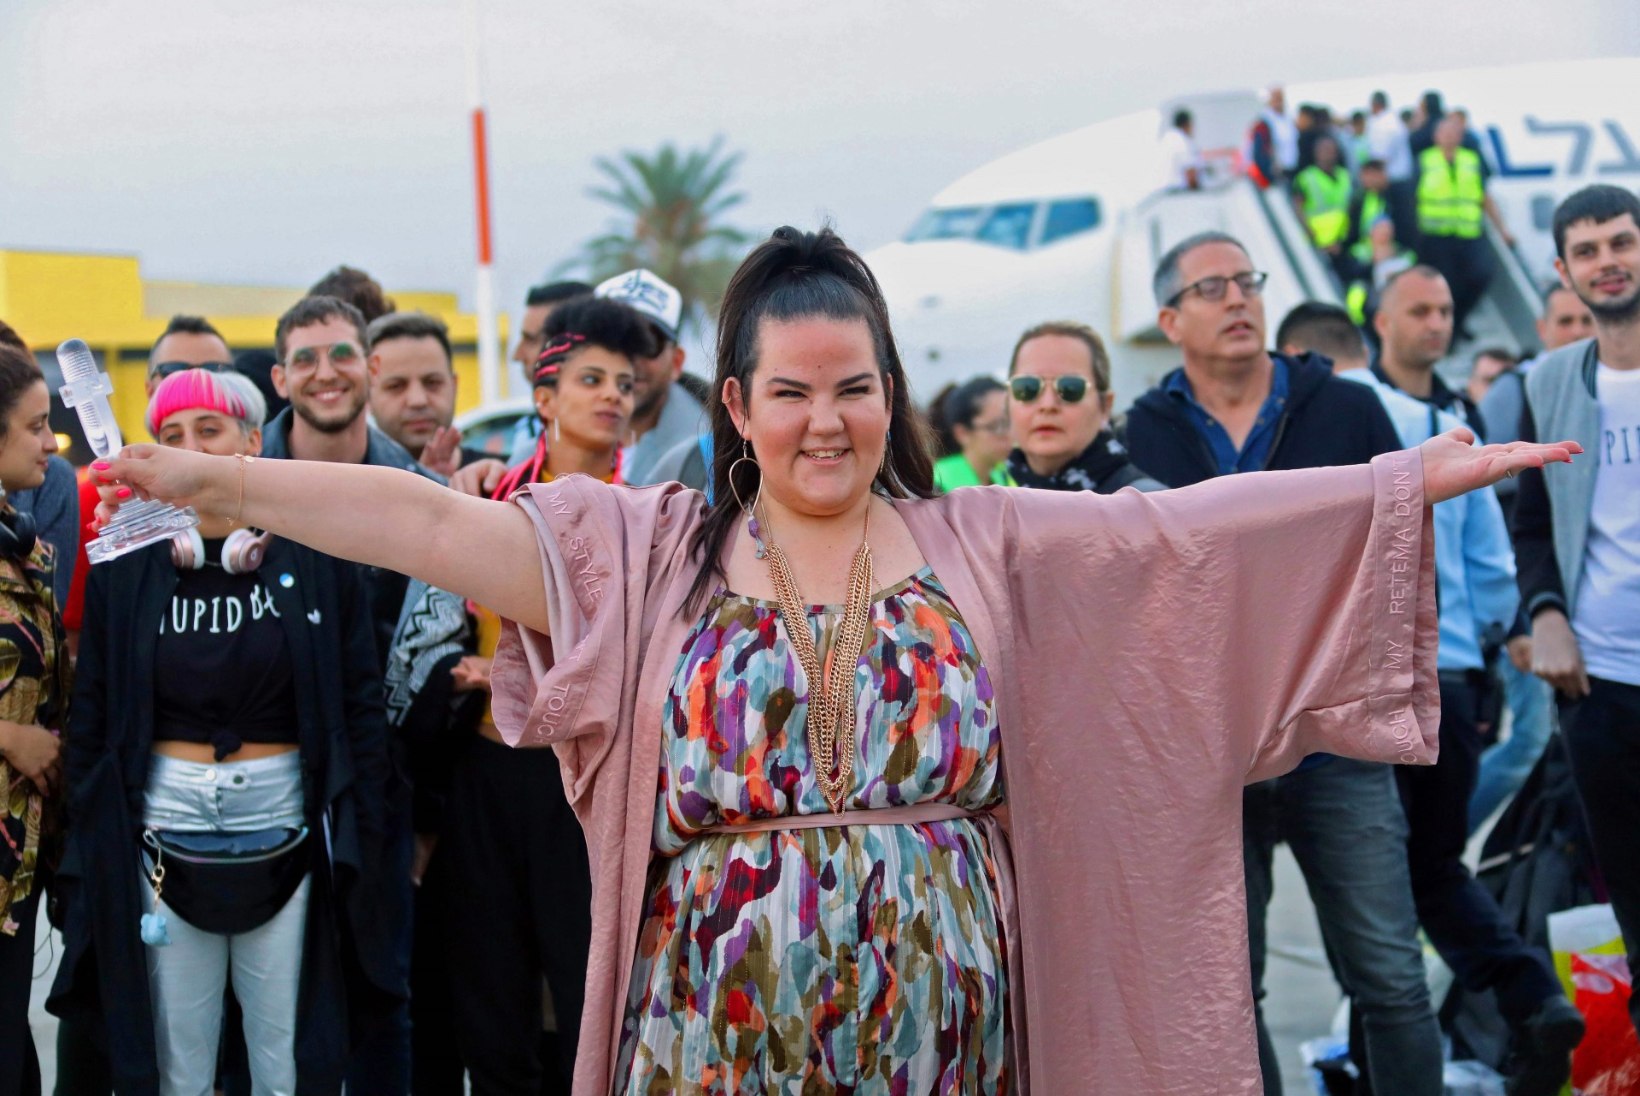 FOTOD | Eurovisioni võitjat Nettat tervitas kodumaale saabudes 20 000 fänni